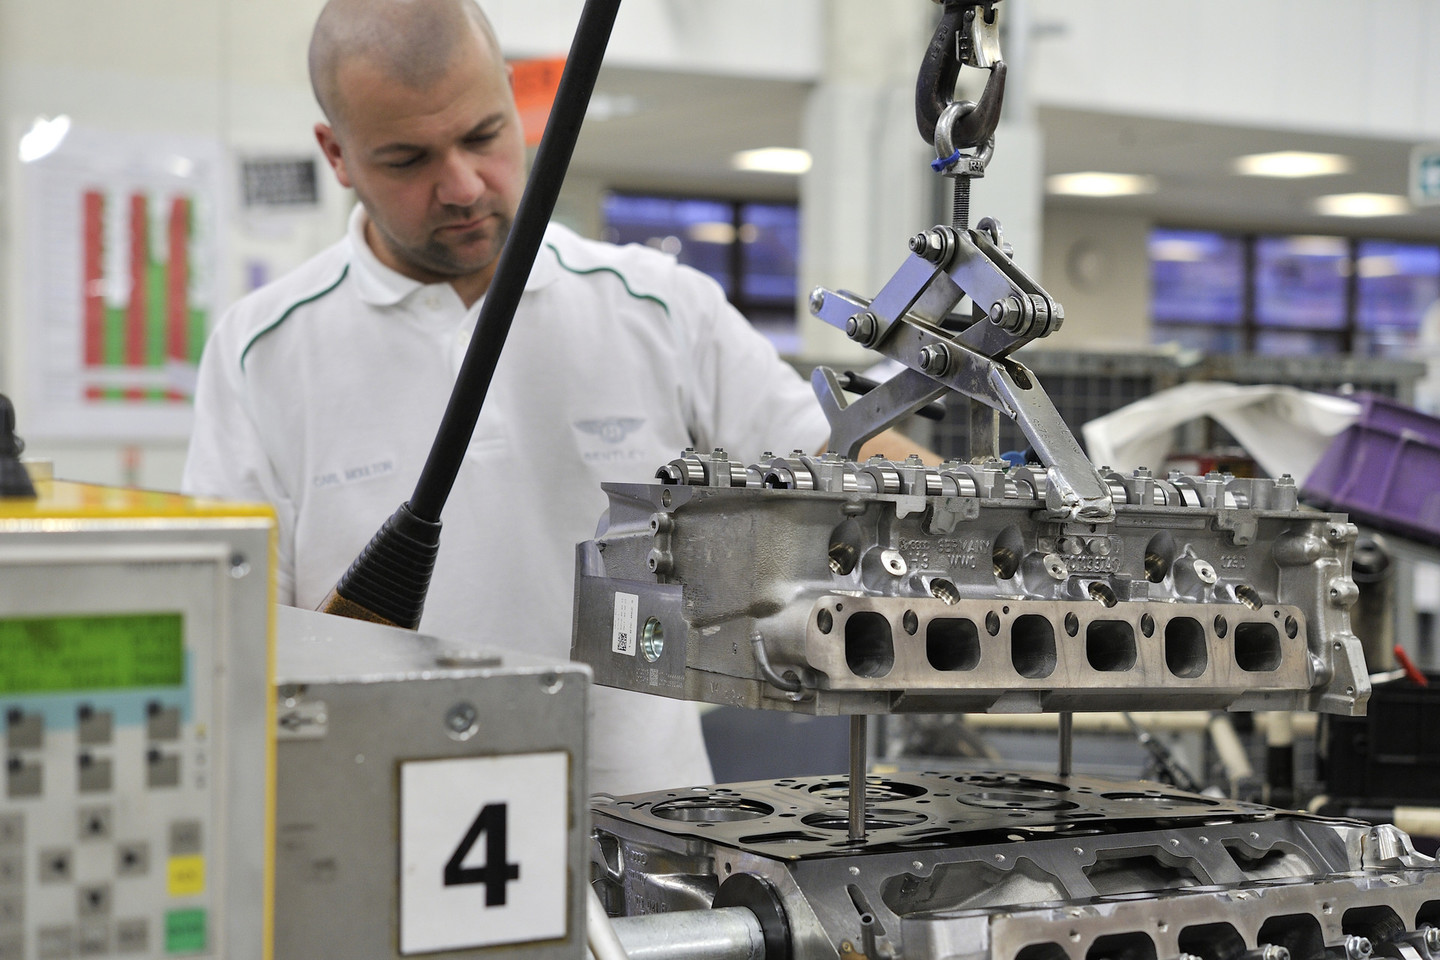 Kru gaminami ir „Bentley“ varikliai, bet į jų studiją lankytojai neįleidžiami.<br>Gamintojo nuot.